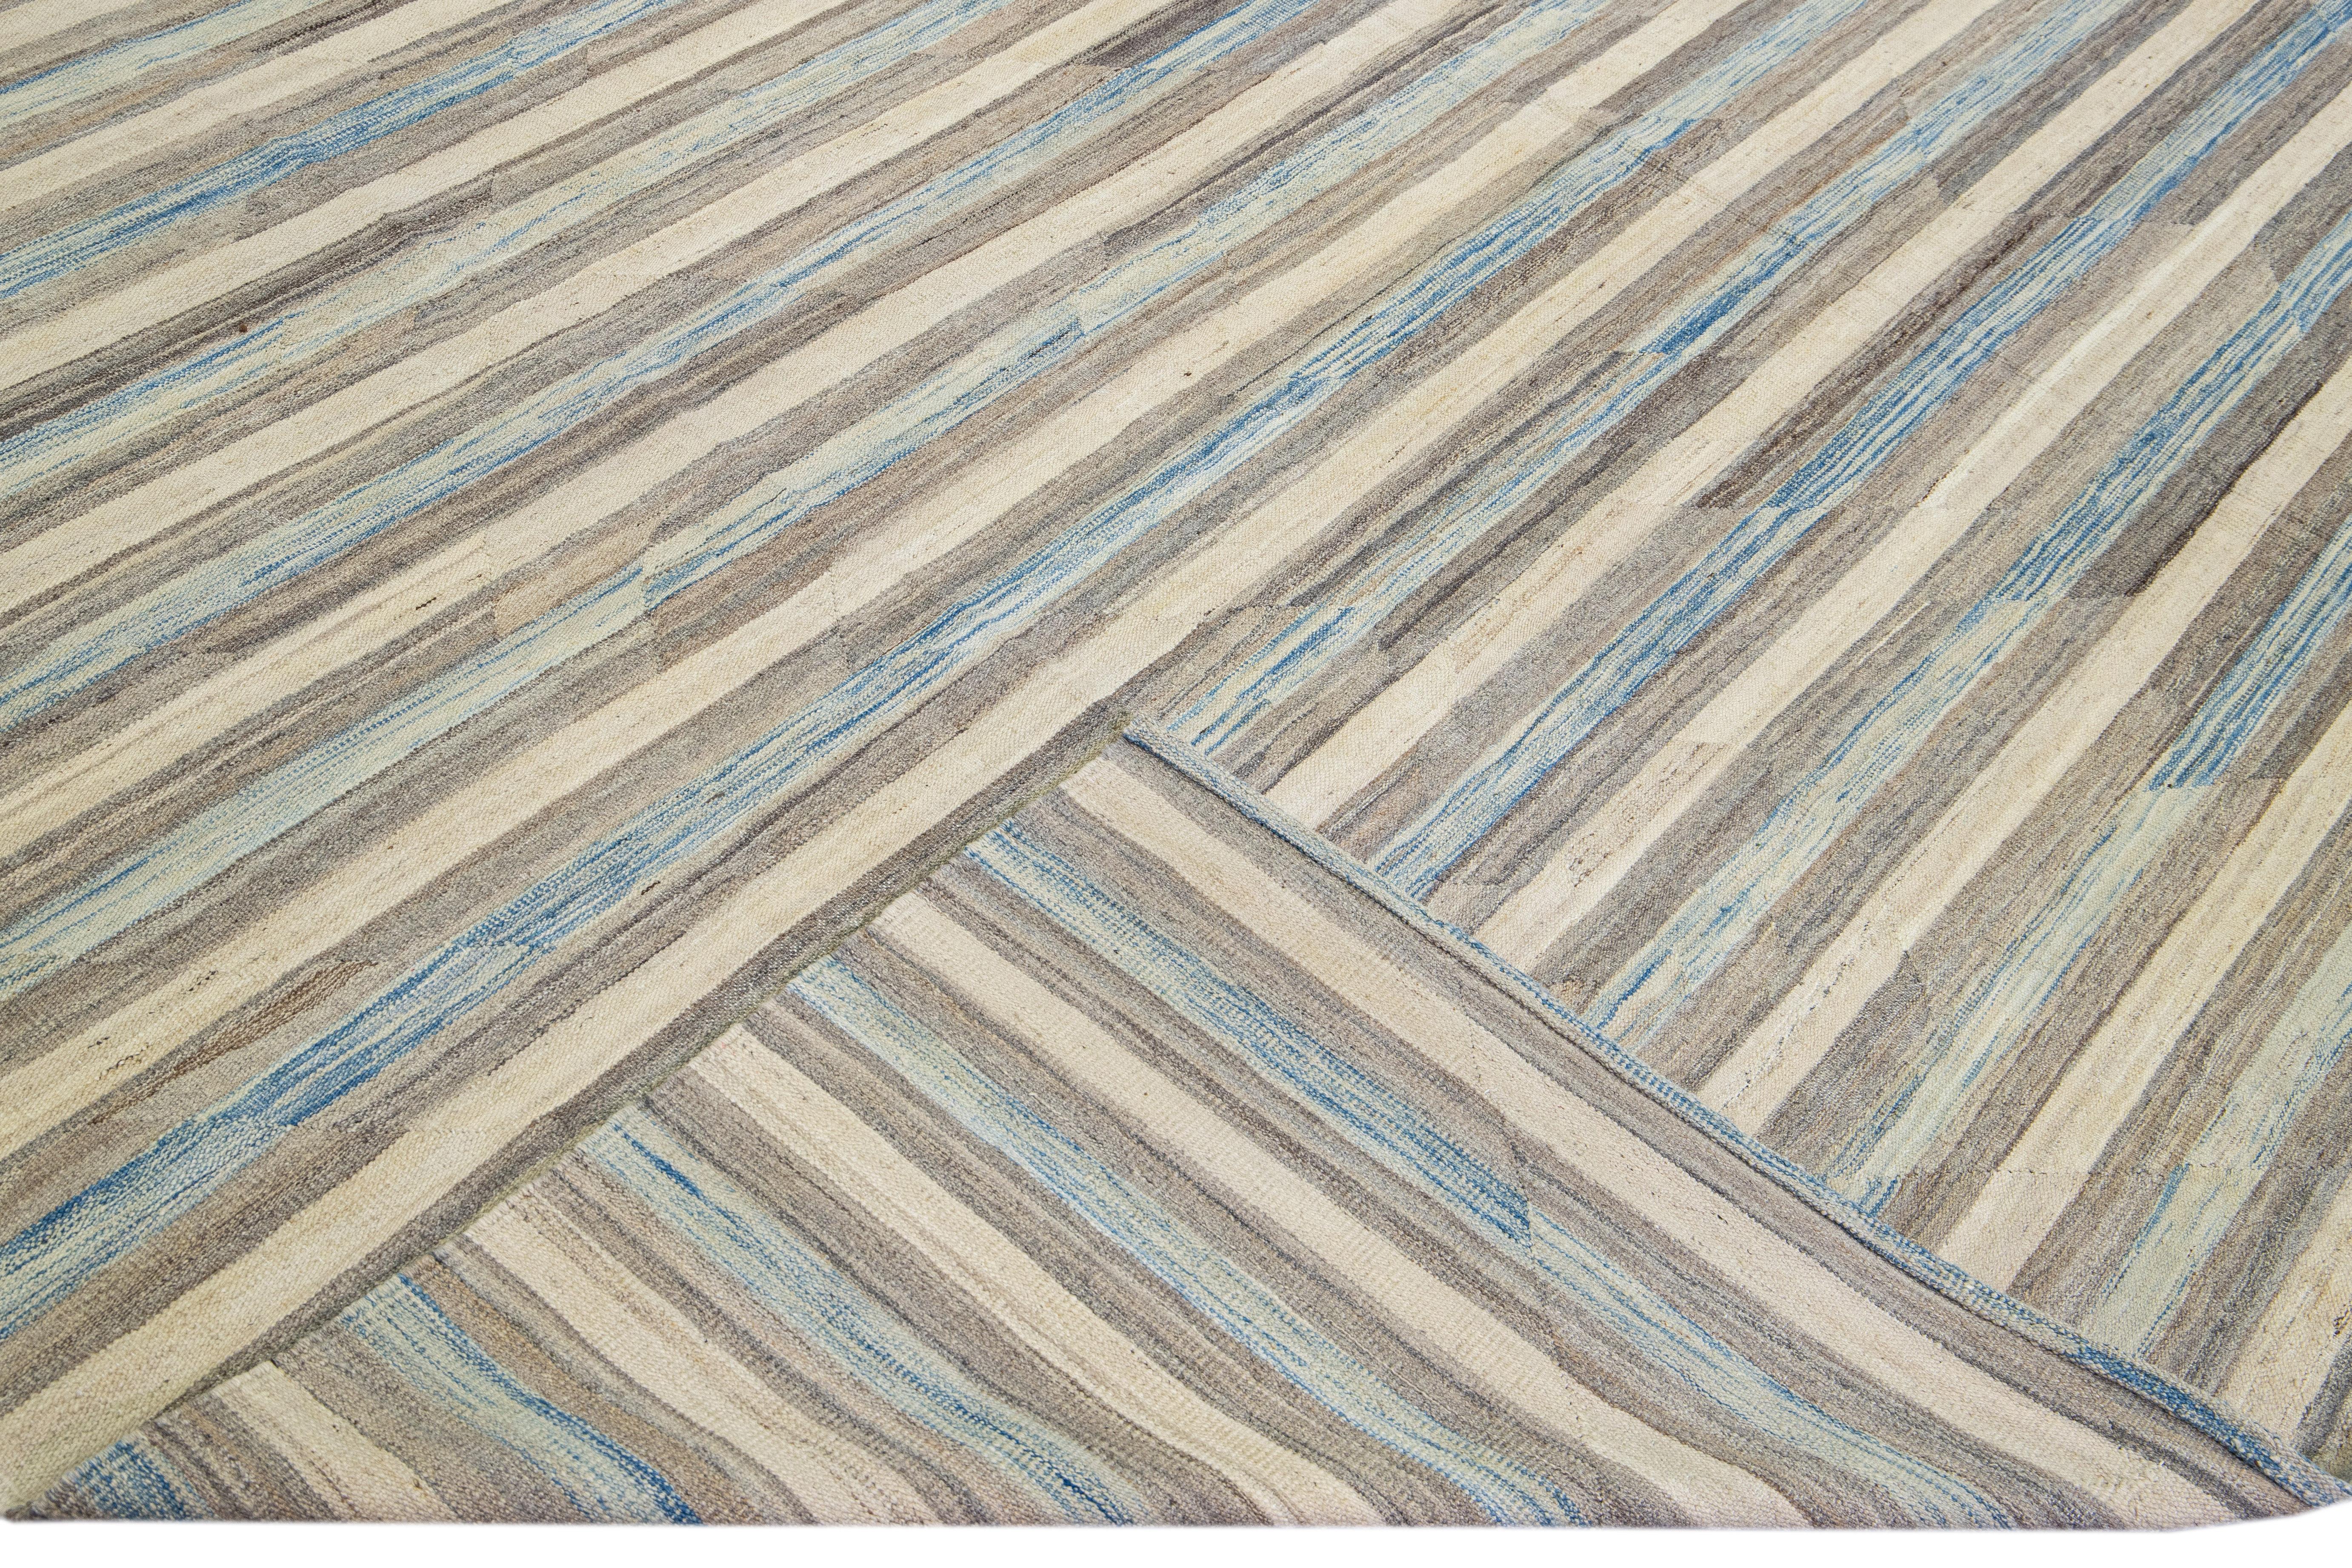 Magnifique tapis Kilim moderne en laine tissé à plat, fait main, avec un champ beige. Ce tapis Kilim a des accents bleus et bruns dans un magnifique design expressionniste abstrait.

Ce tapis mesure : 13'2